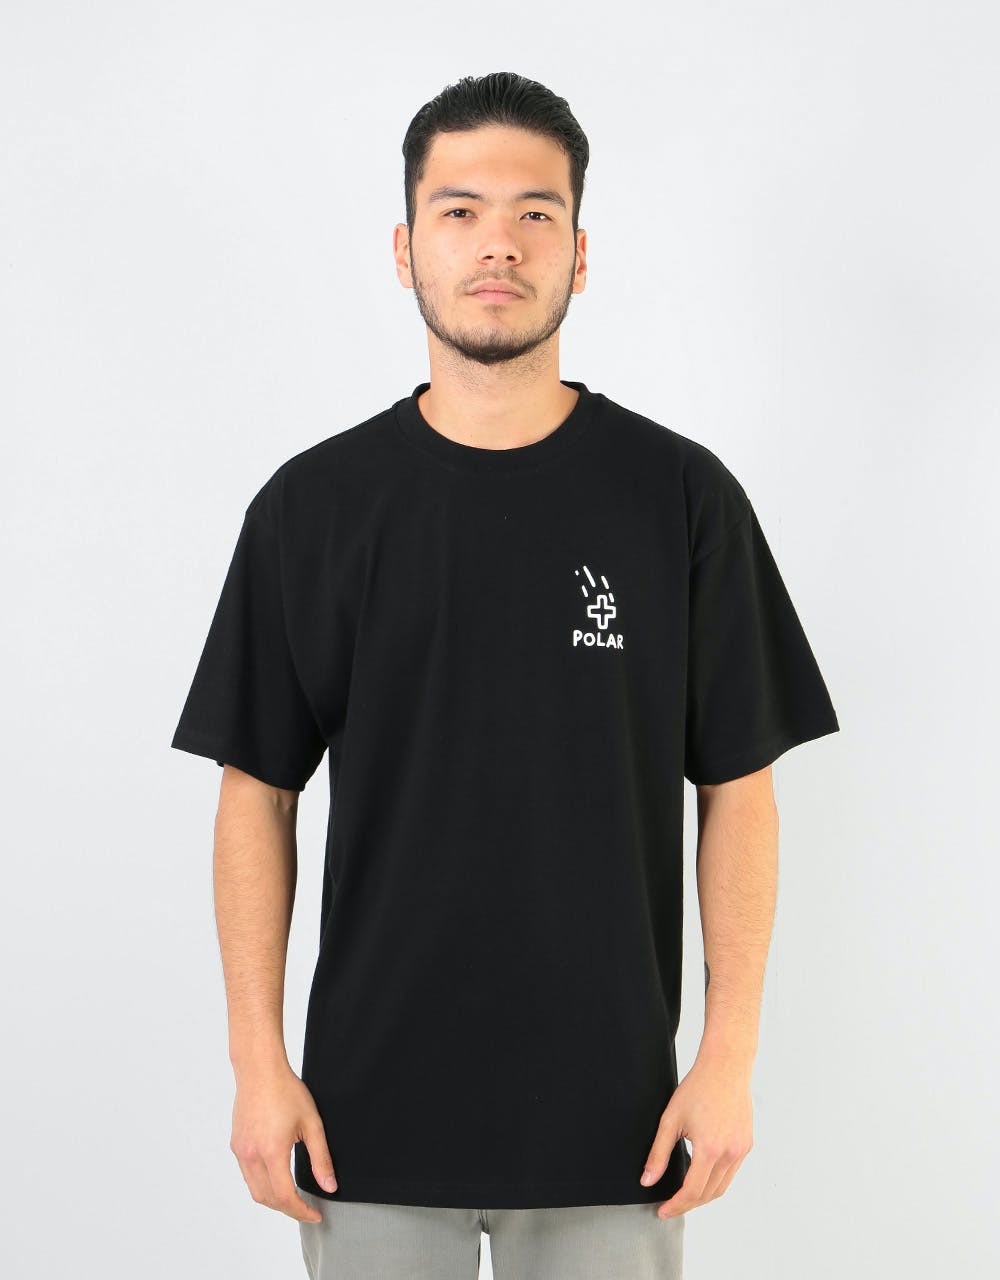 Polar Plus T-Shirt - Black